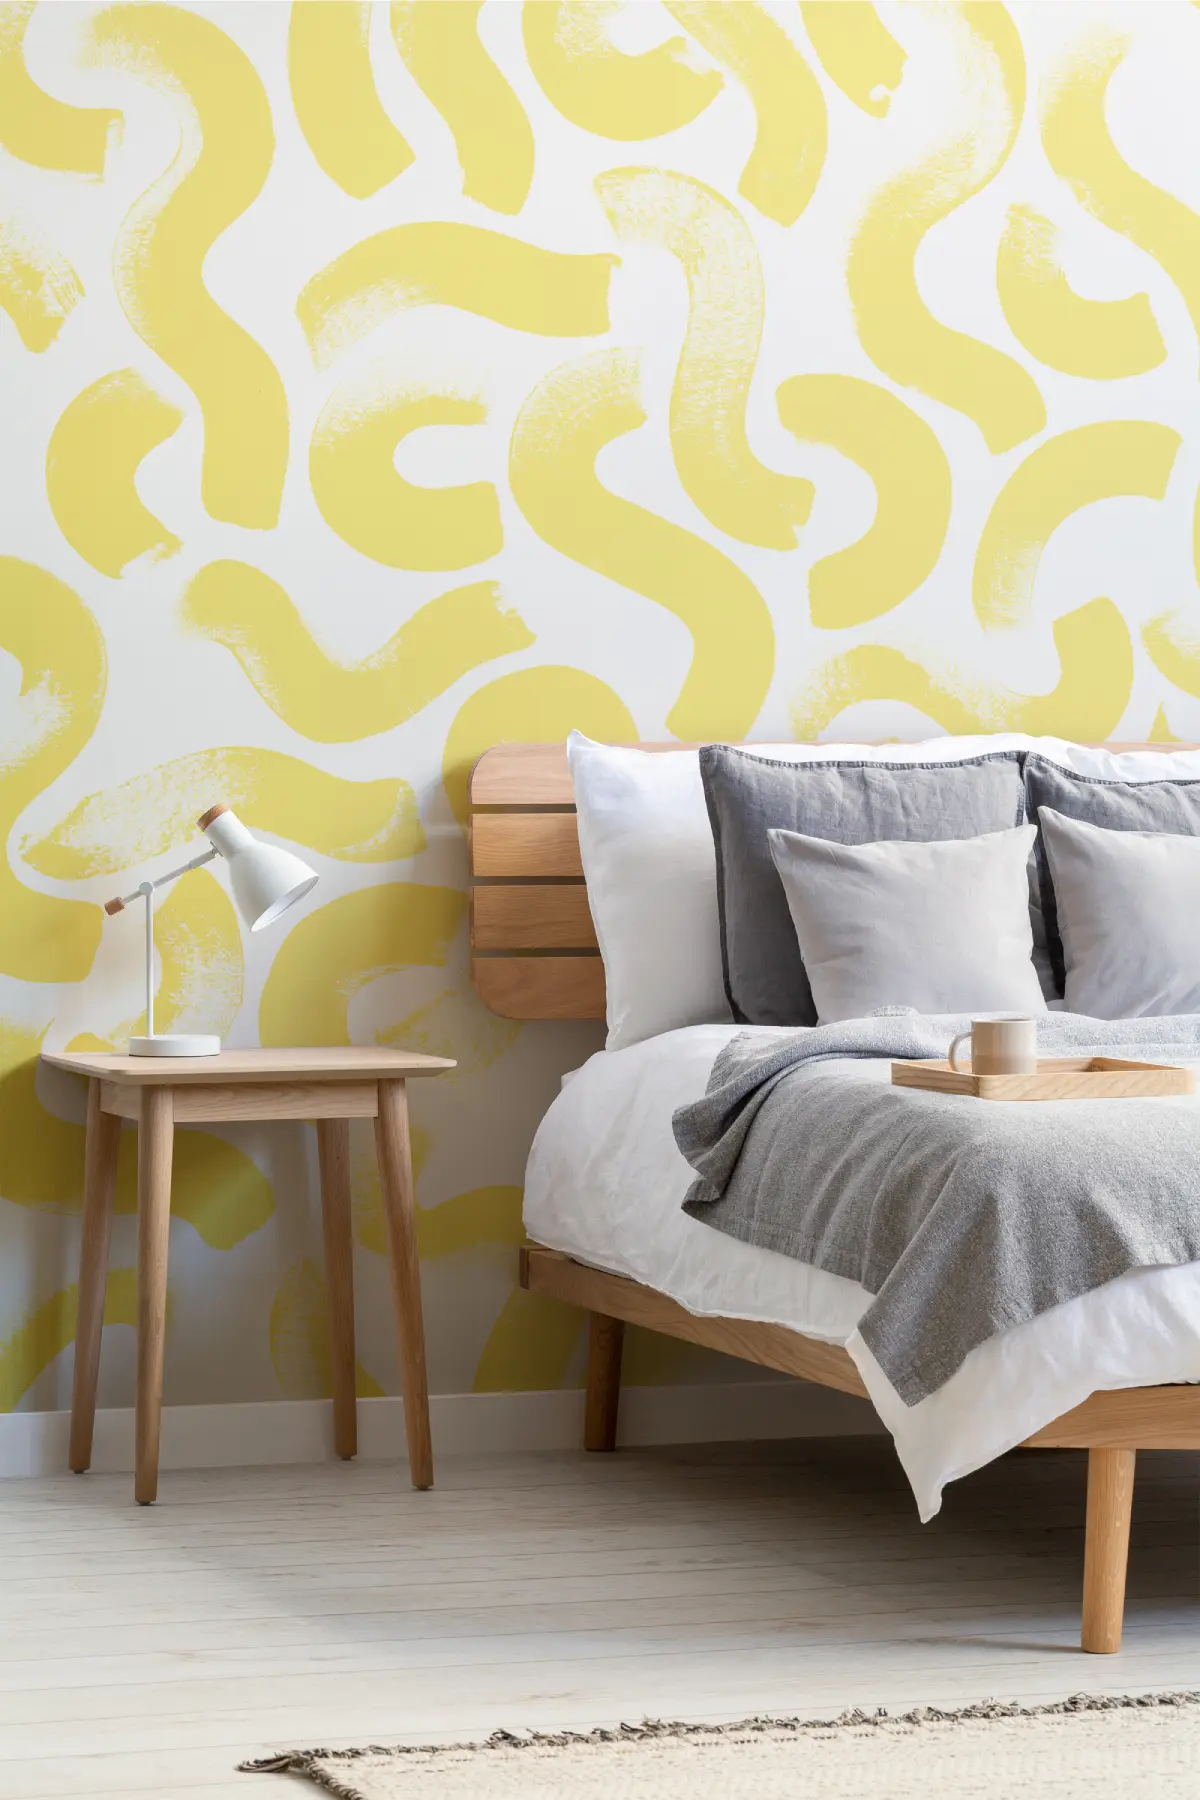 Papier peint à motifs jaune dans une chambre adulte